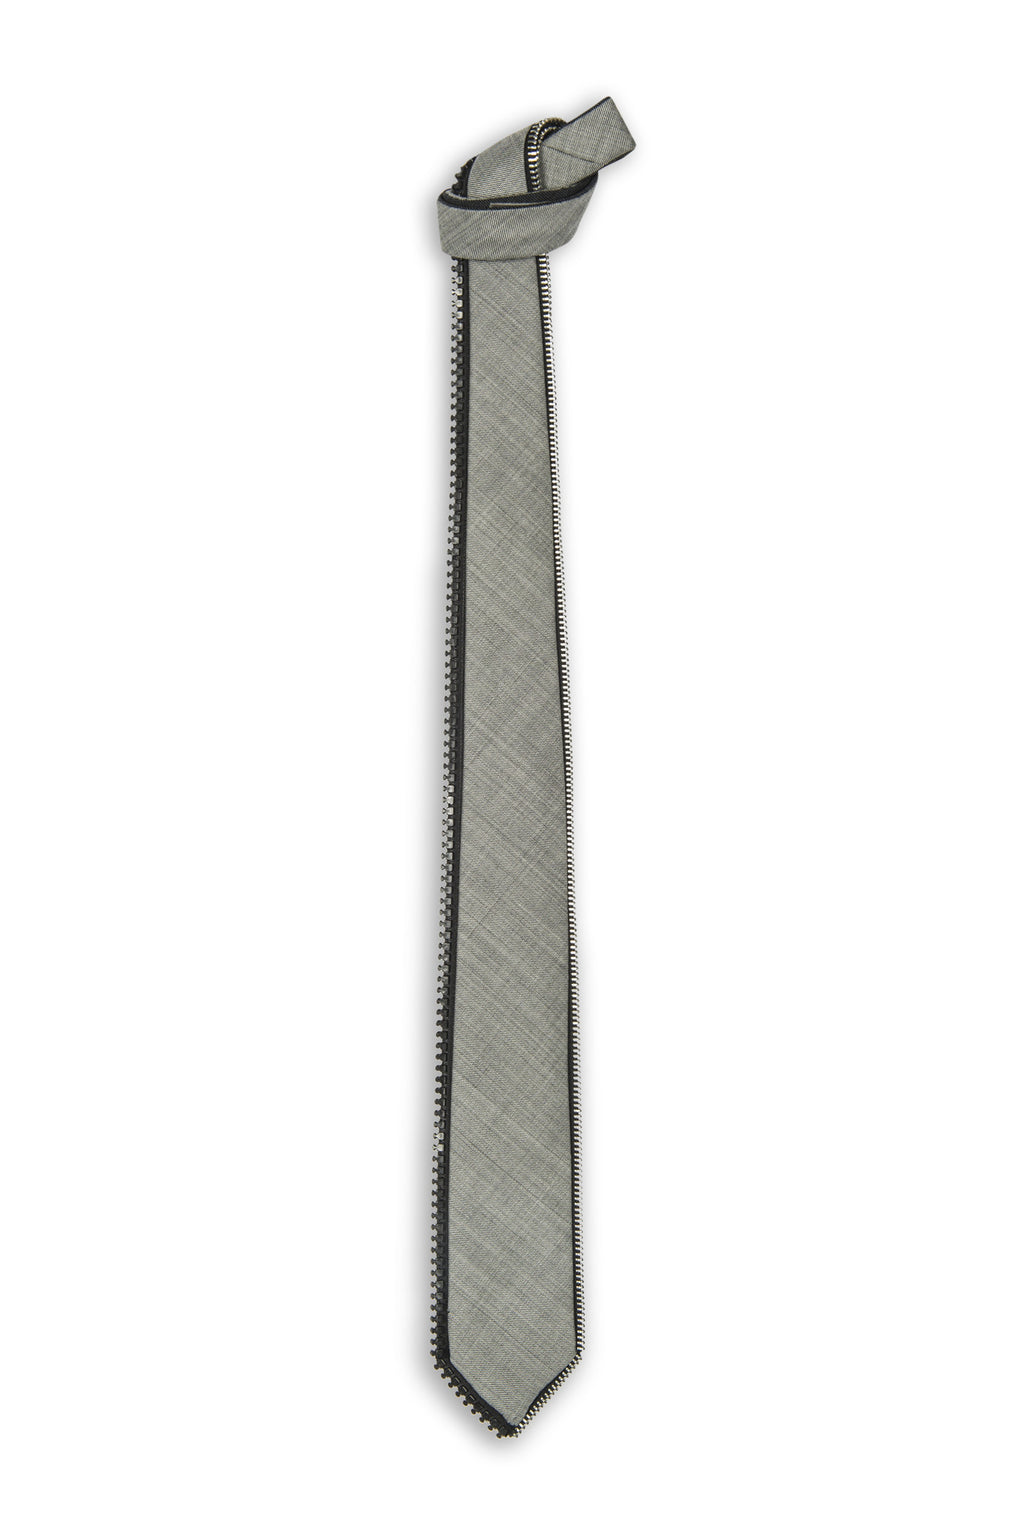 Cravate laine grise réversible avec zipper autour - Grey wool reversible tie with zipper all around